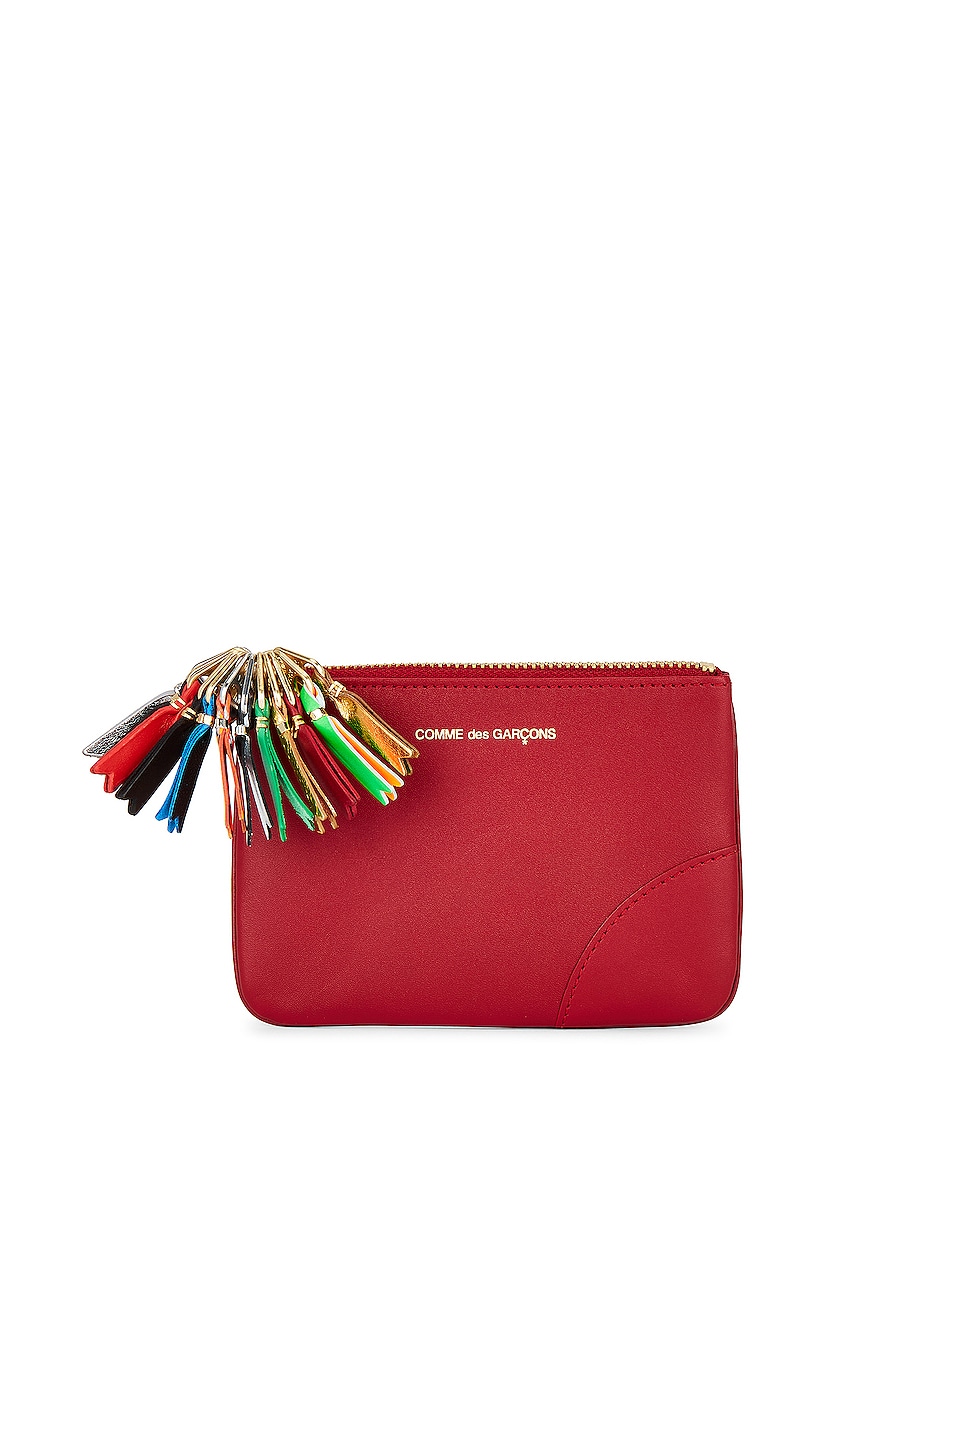 Zipper Pull Wallet in Red